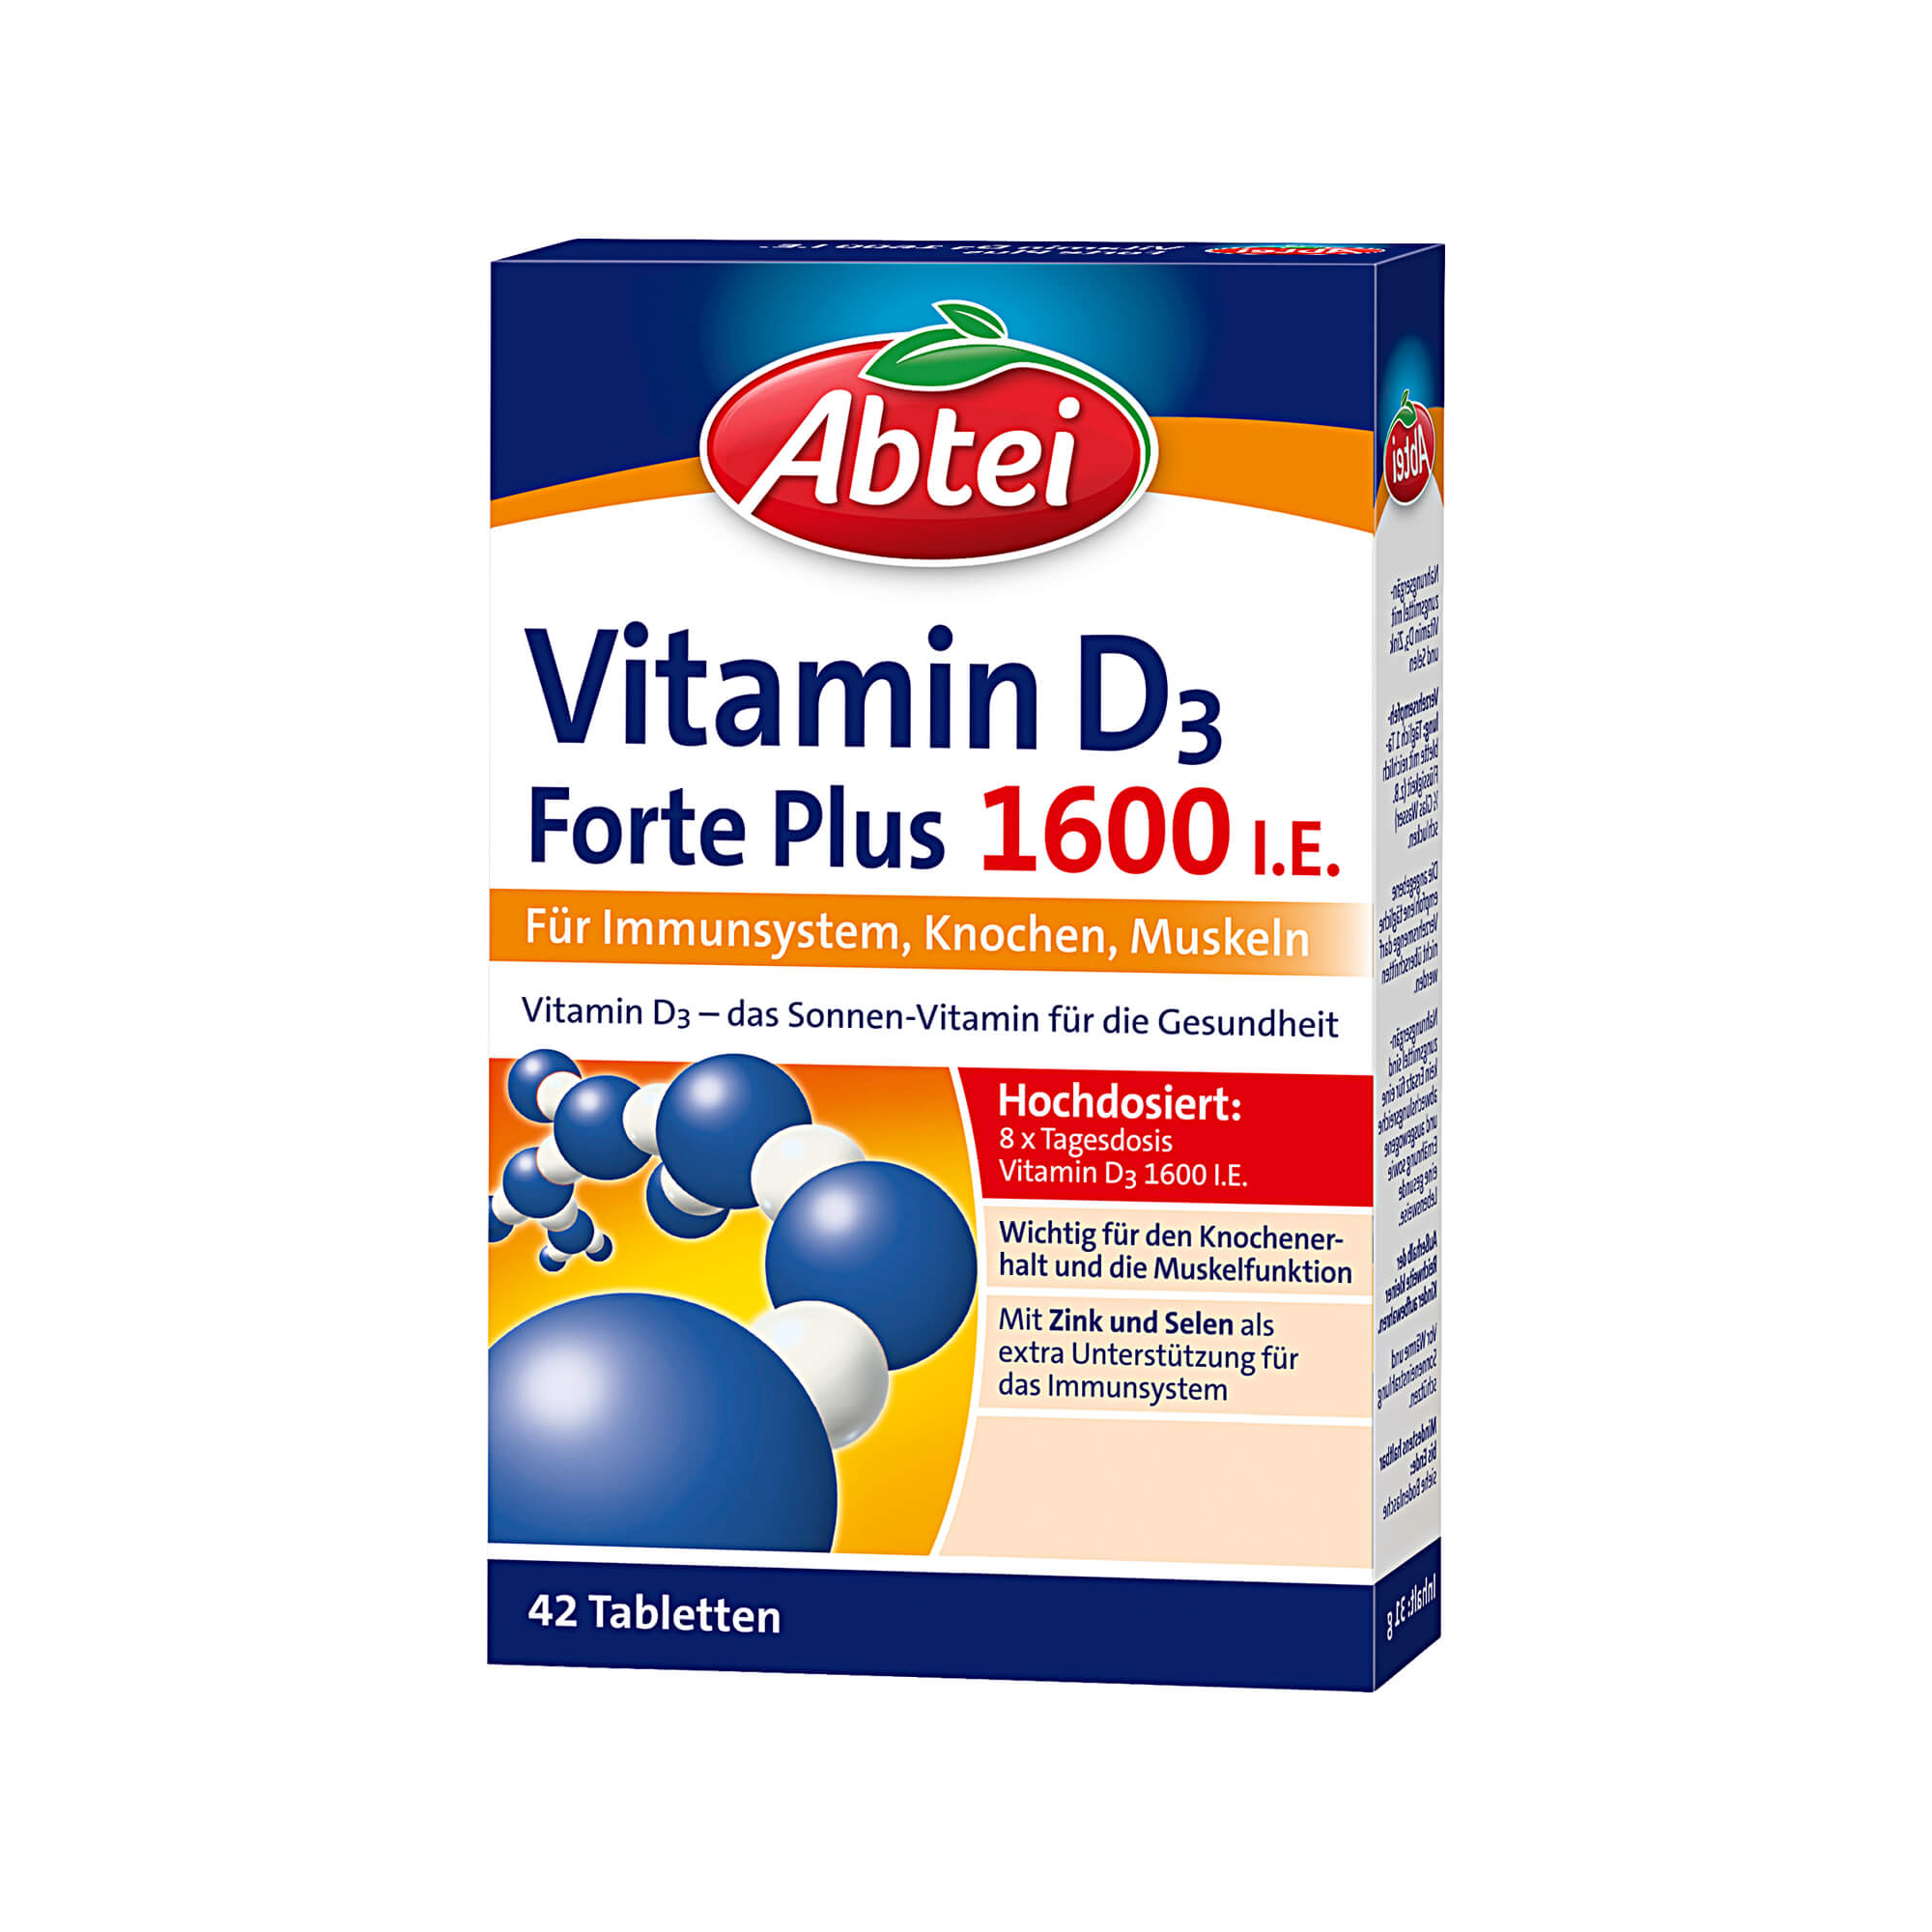 Nahrungsergänzungsmittel mit Vitamin D3, Zink und Selen.